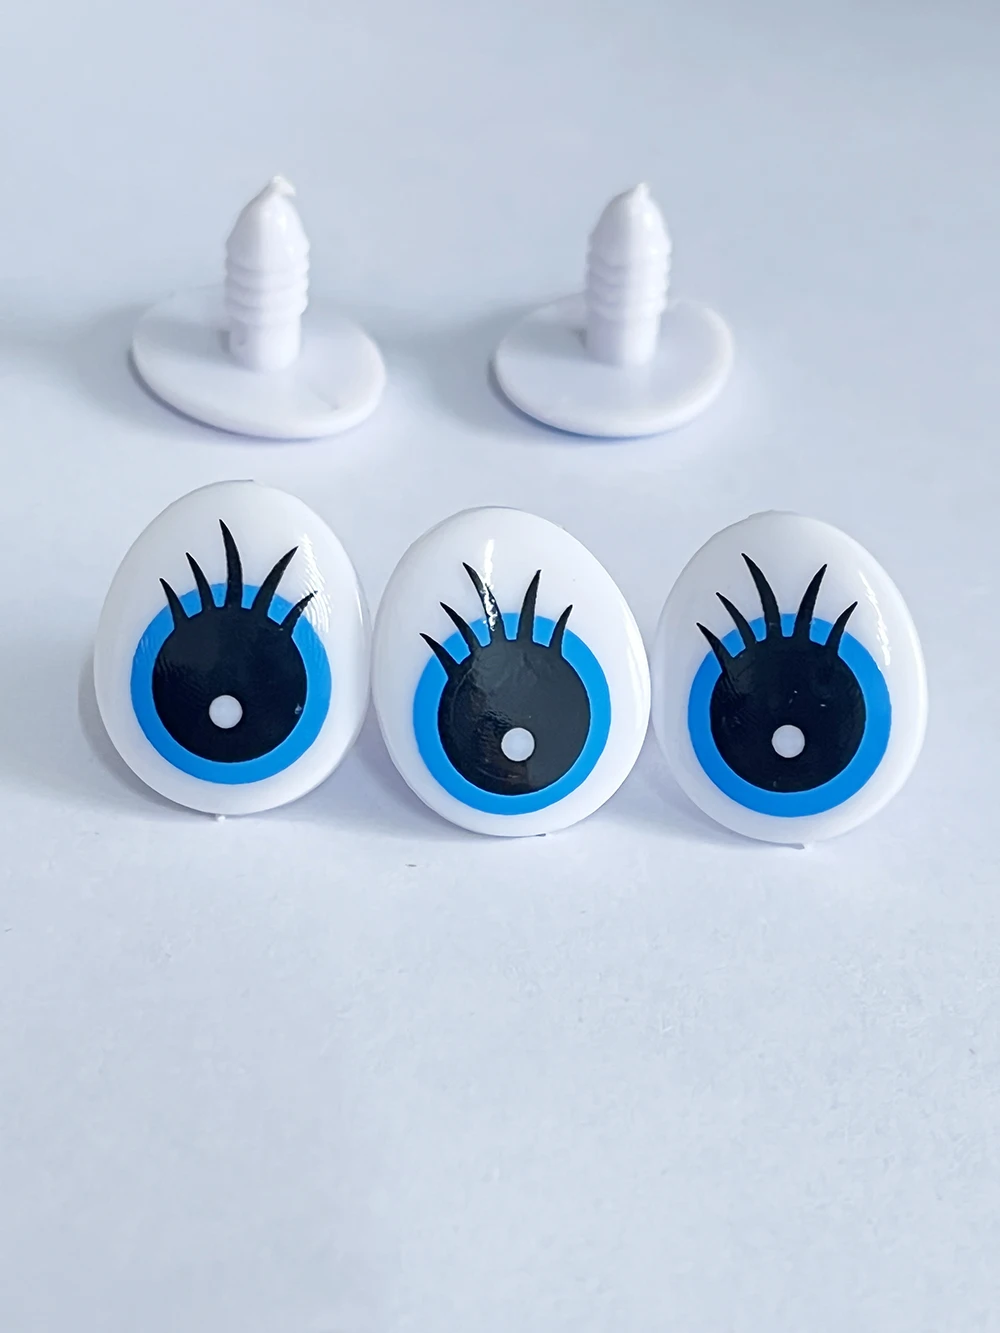 20 штук милых игрушек-животных размером 16x20 мм, мультяшные голубые глазки с шайбой для кукольных поделок-вариант цвета